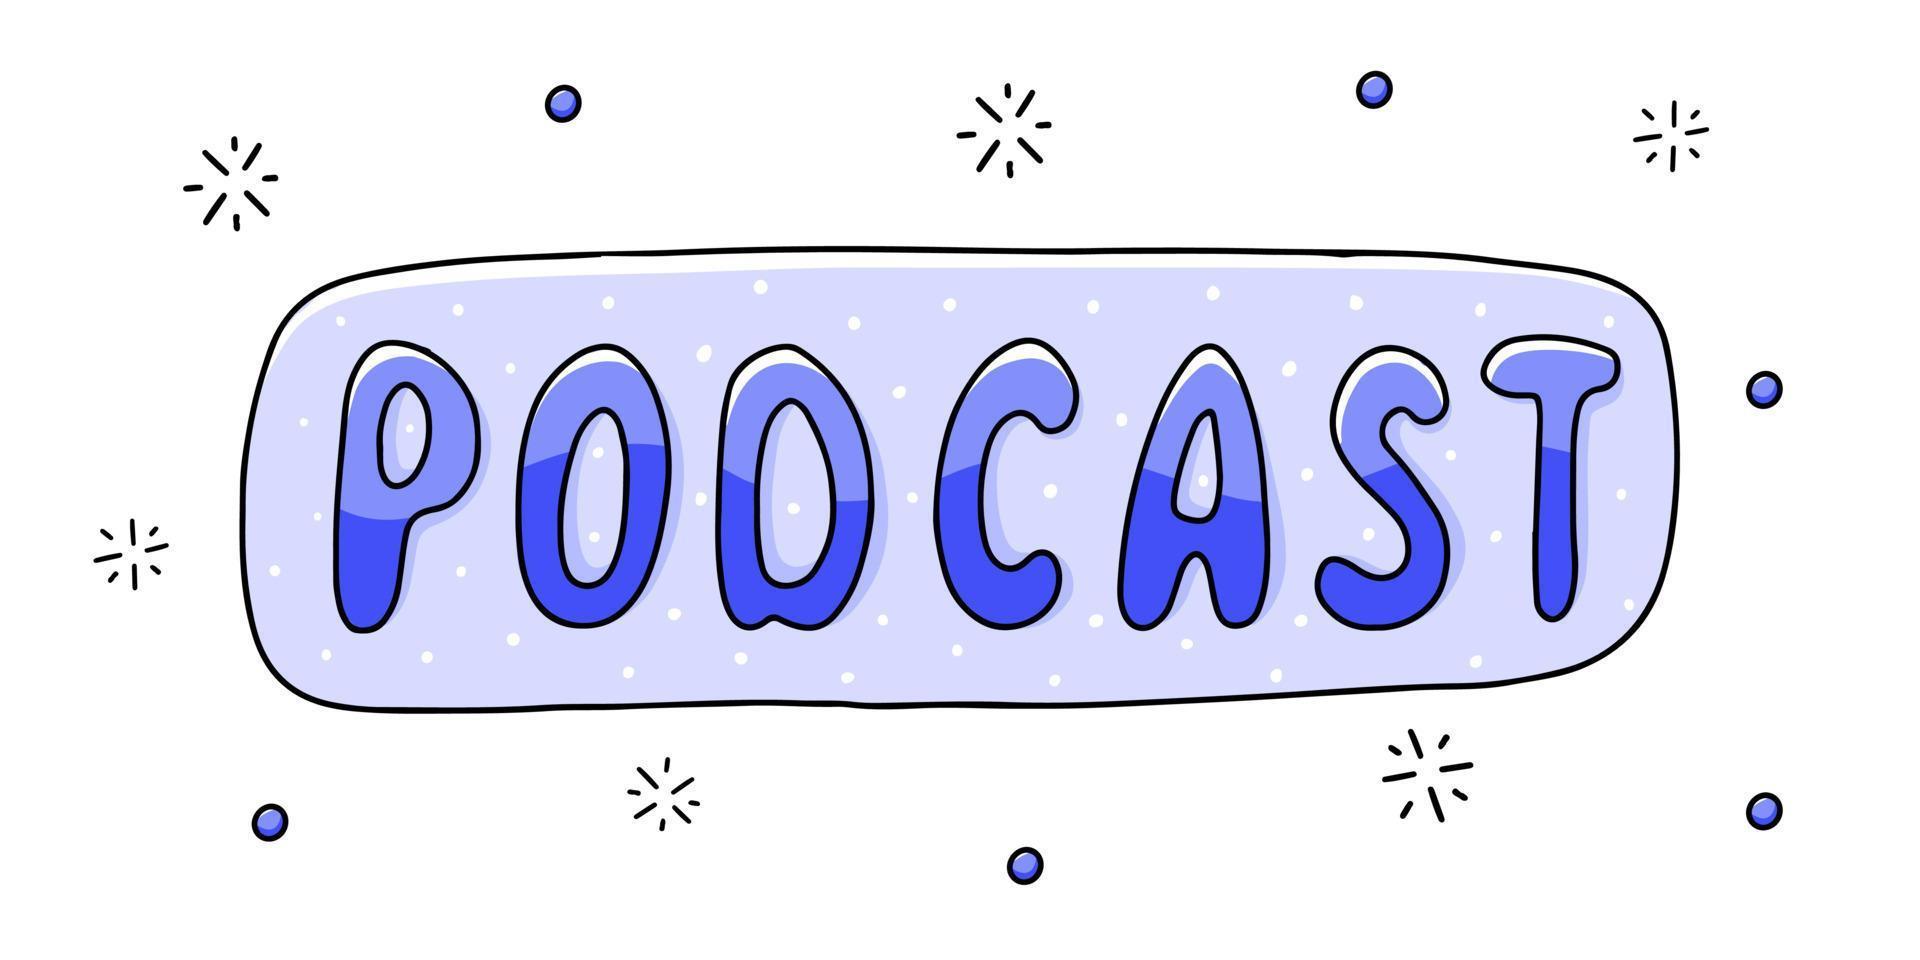 podcast - letras escritas à mão. ilustração vetorial mão desenhada com pequenos elementos. estilo doodle. vetor